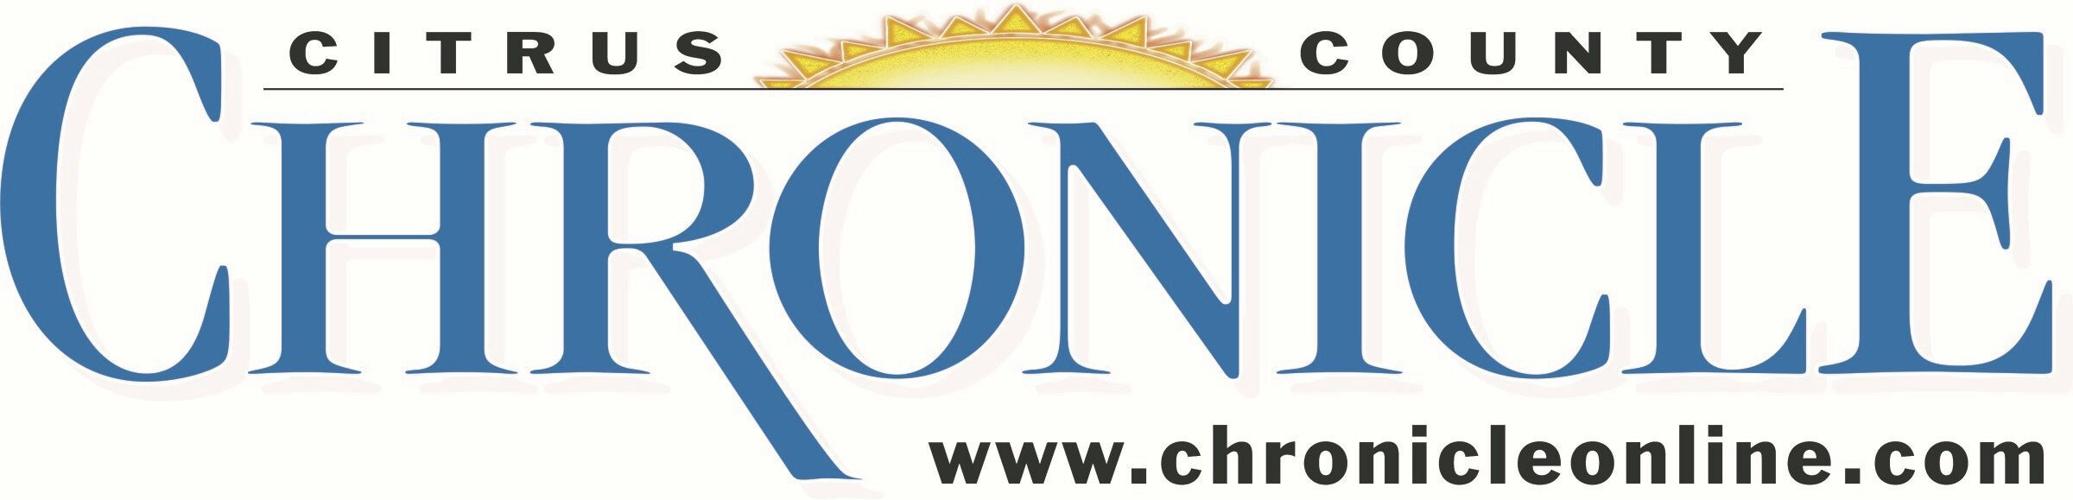 chronicle logo